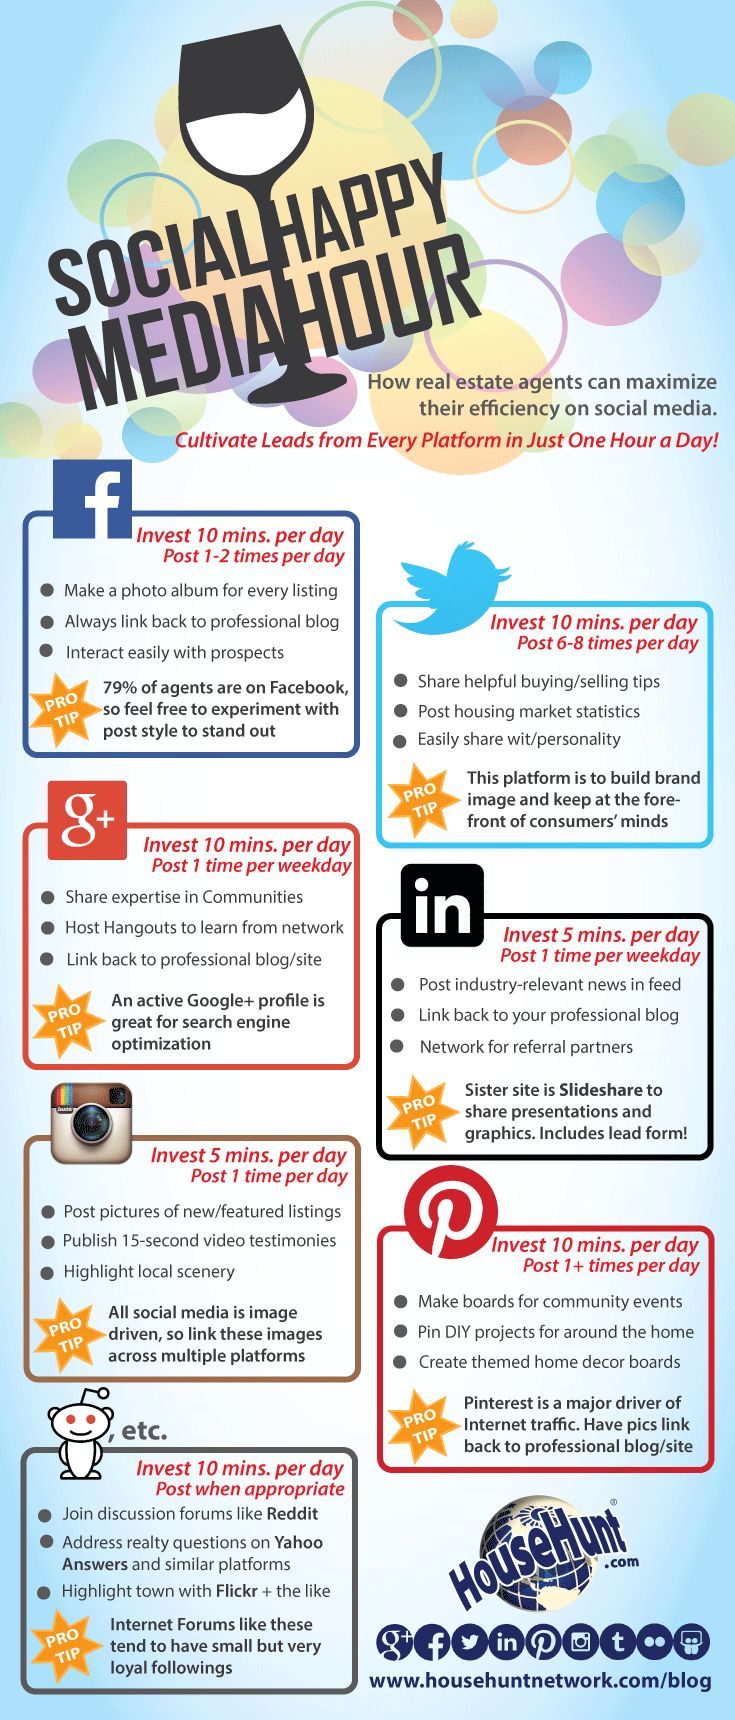 Social Media Happy Hour [Infographic] - LifeHack